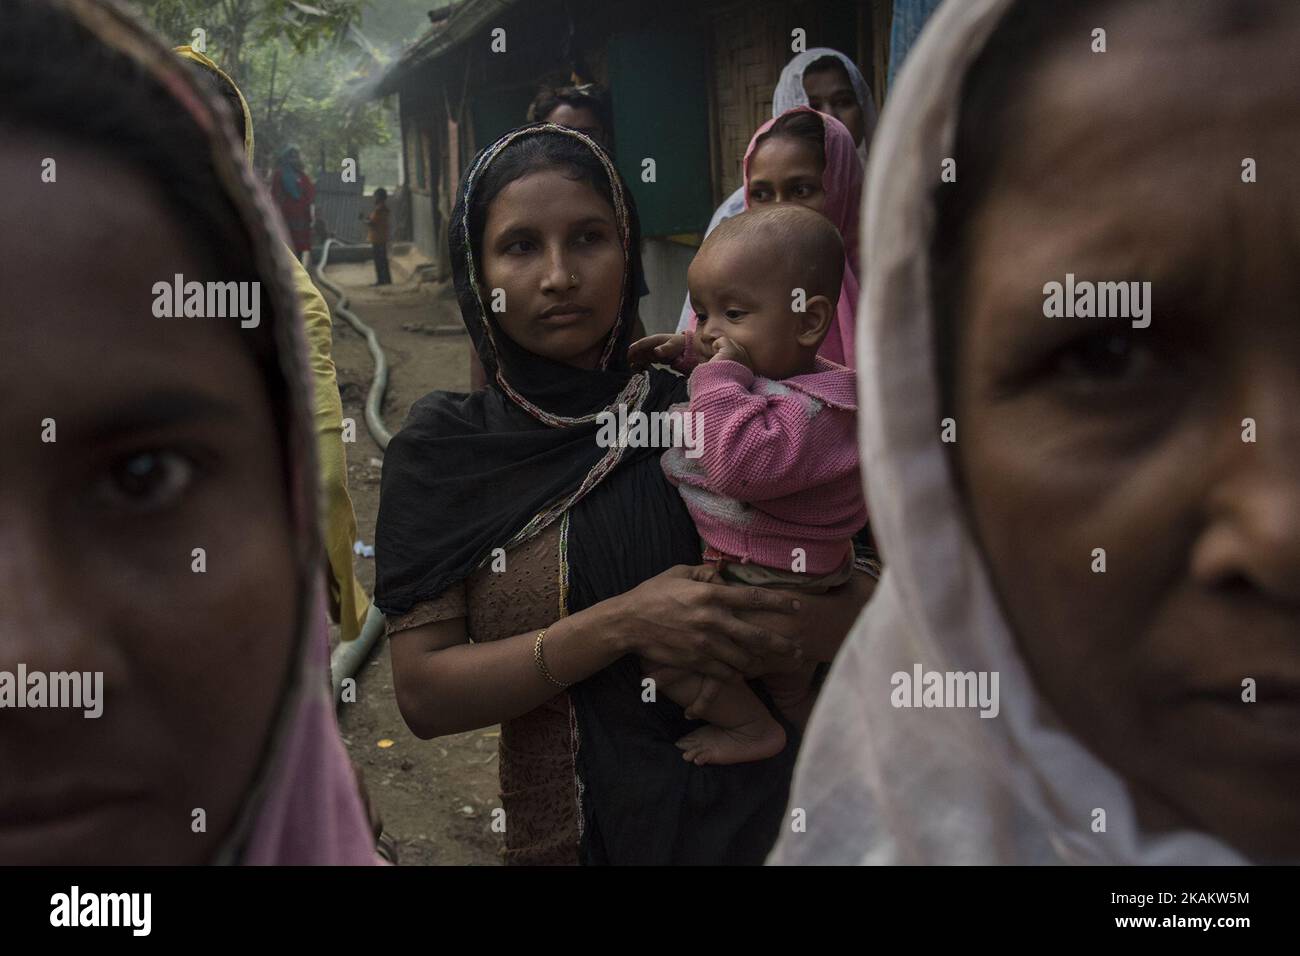 Eine Gruppe von Rohingya-Frauen, die in eine ungewisse Zukunft gehen. Kutupalong, Bangladesch, 21.02.17 . Die muslimischen Rohingya-Flüchtlinge aus Bangladesch sind ursprünglich Bewohner der Provinz Arakan in Myanmar. Als jedoch die Staatsbürgerschaft von Myanmar im Jahr 1990s verweigert wurde und die Folter durch militärische und buddhistische extremistische Kräfte zunahm, wurde die Gemeinschaft gezwungen, in die provisorischen Lager von Bangladesch Zuflucht zu nehmen. Mehr als eine Million Rohingyas leben heute ohne Grundausstattung in den Regierungslagern wie Kutupalong. Die Zukunft ist ebenso stark wie die bangladeschische Govt plant, die Menschen umzusiedeln Stockfoto